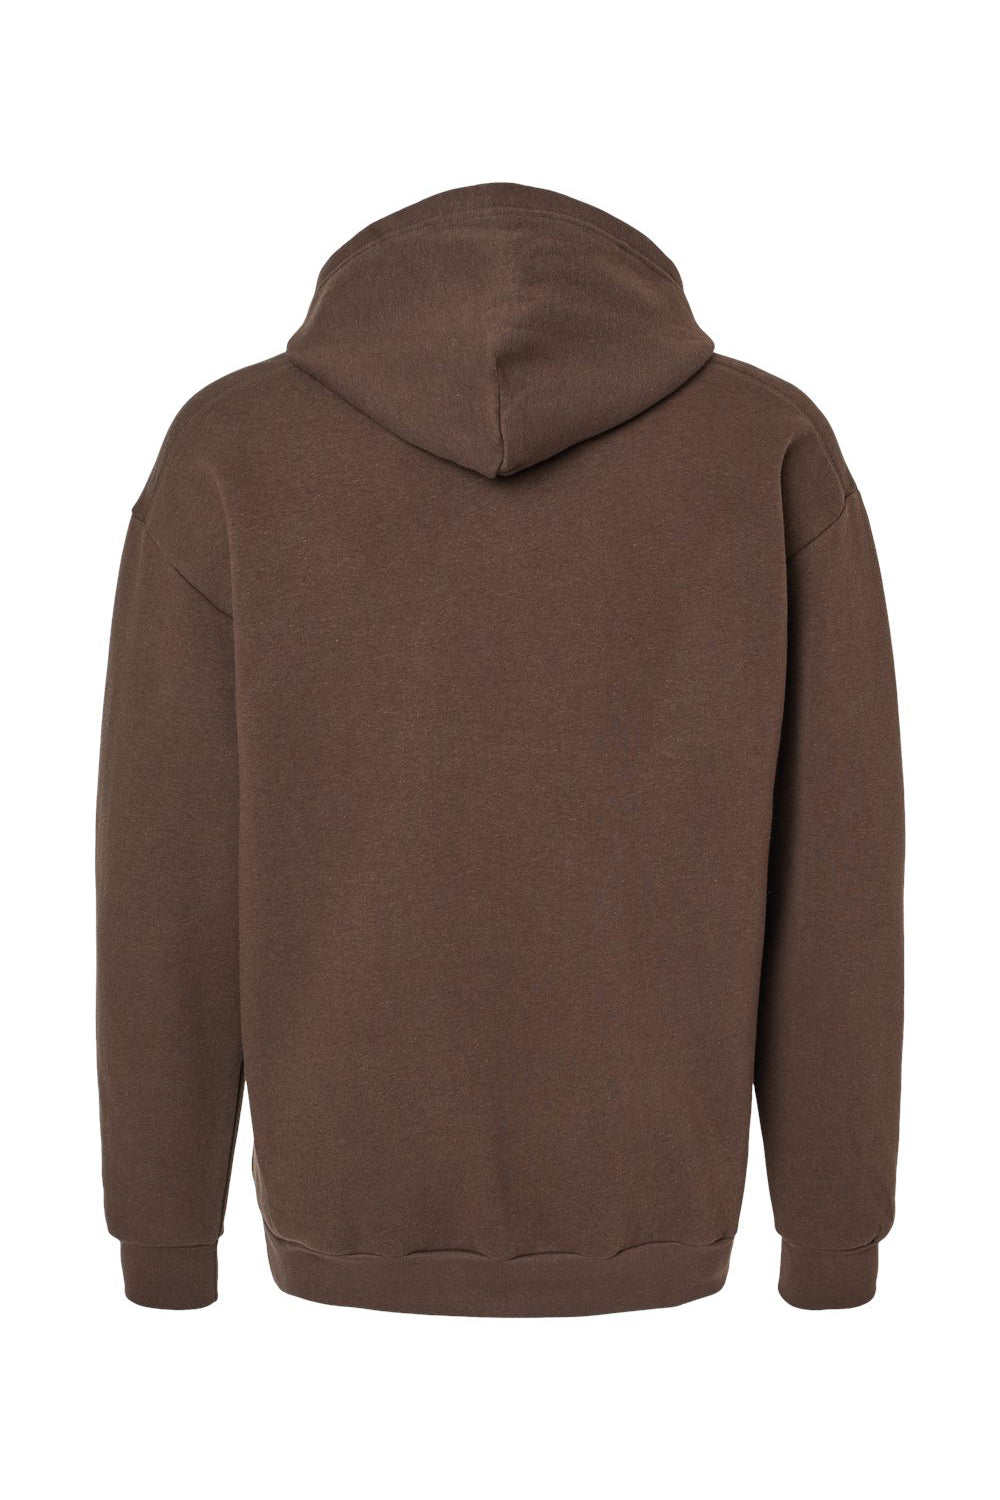 American Apparel RF498 Mens ReFlex Fleece Hooded Sweatshirt Hoodie Brown Flat Back